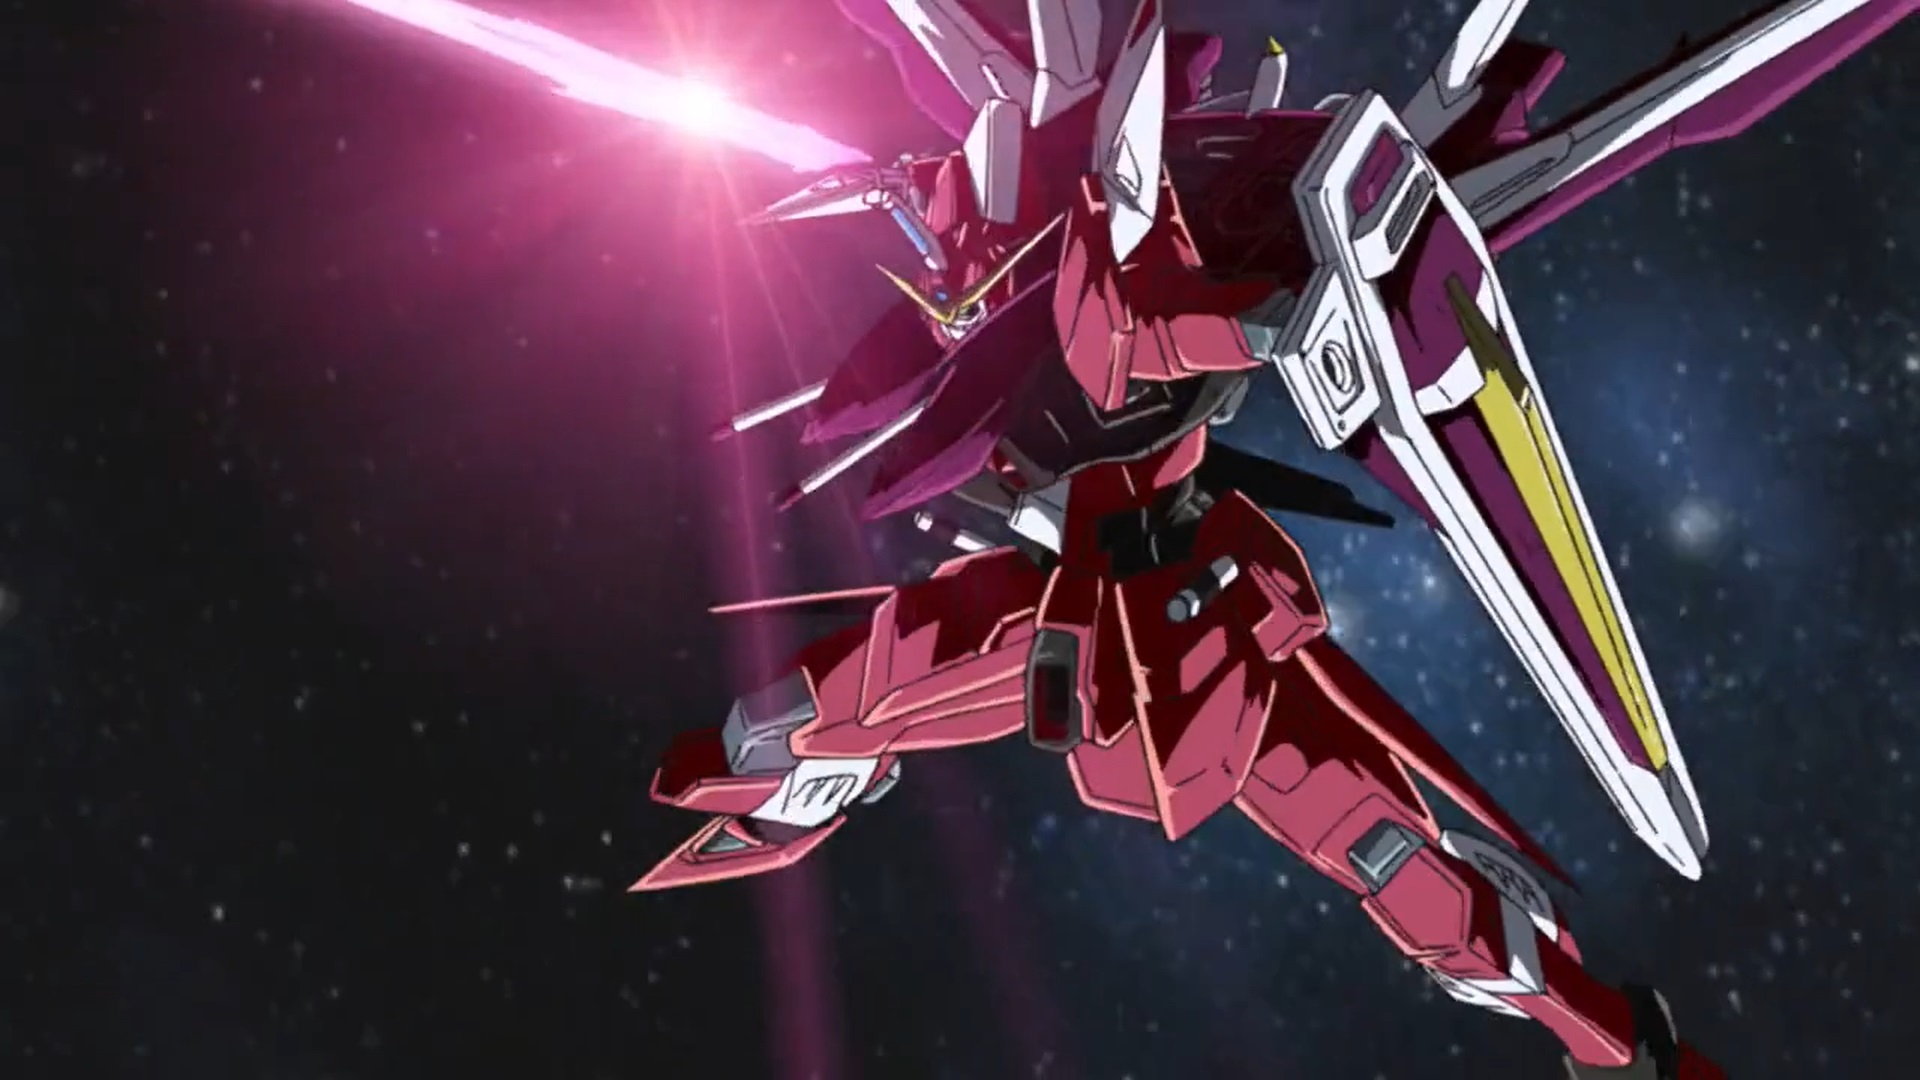 Anime Mechs Super Robot Taisen Mobile Suit Gundam SEED Gundam Justice Gundam Artwork Digital Art Fan 1920x1080